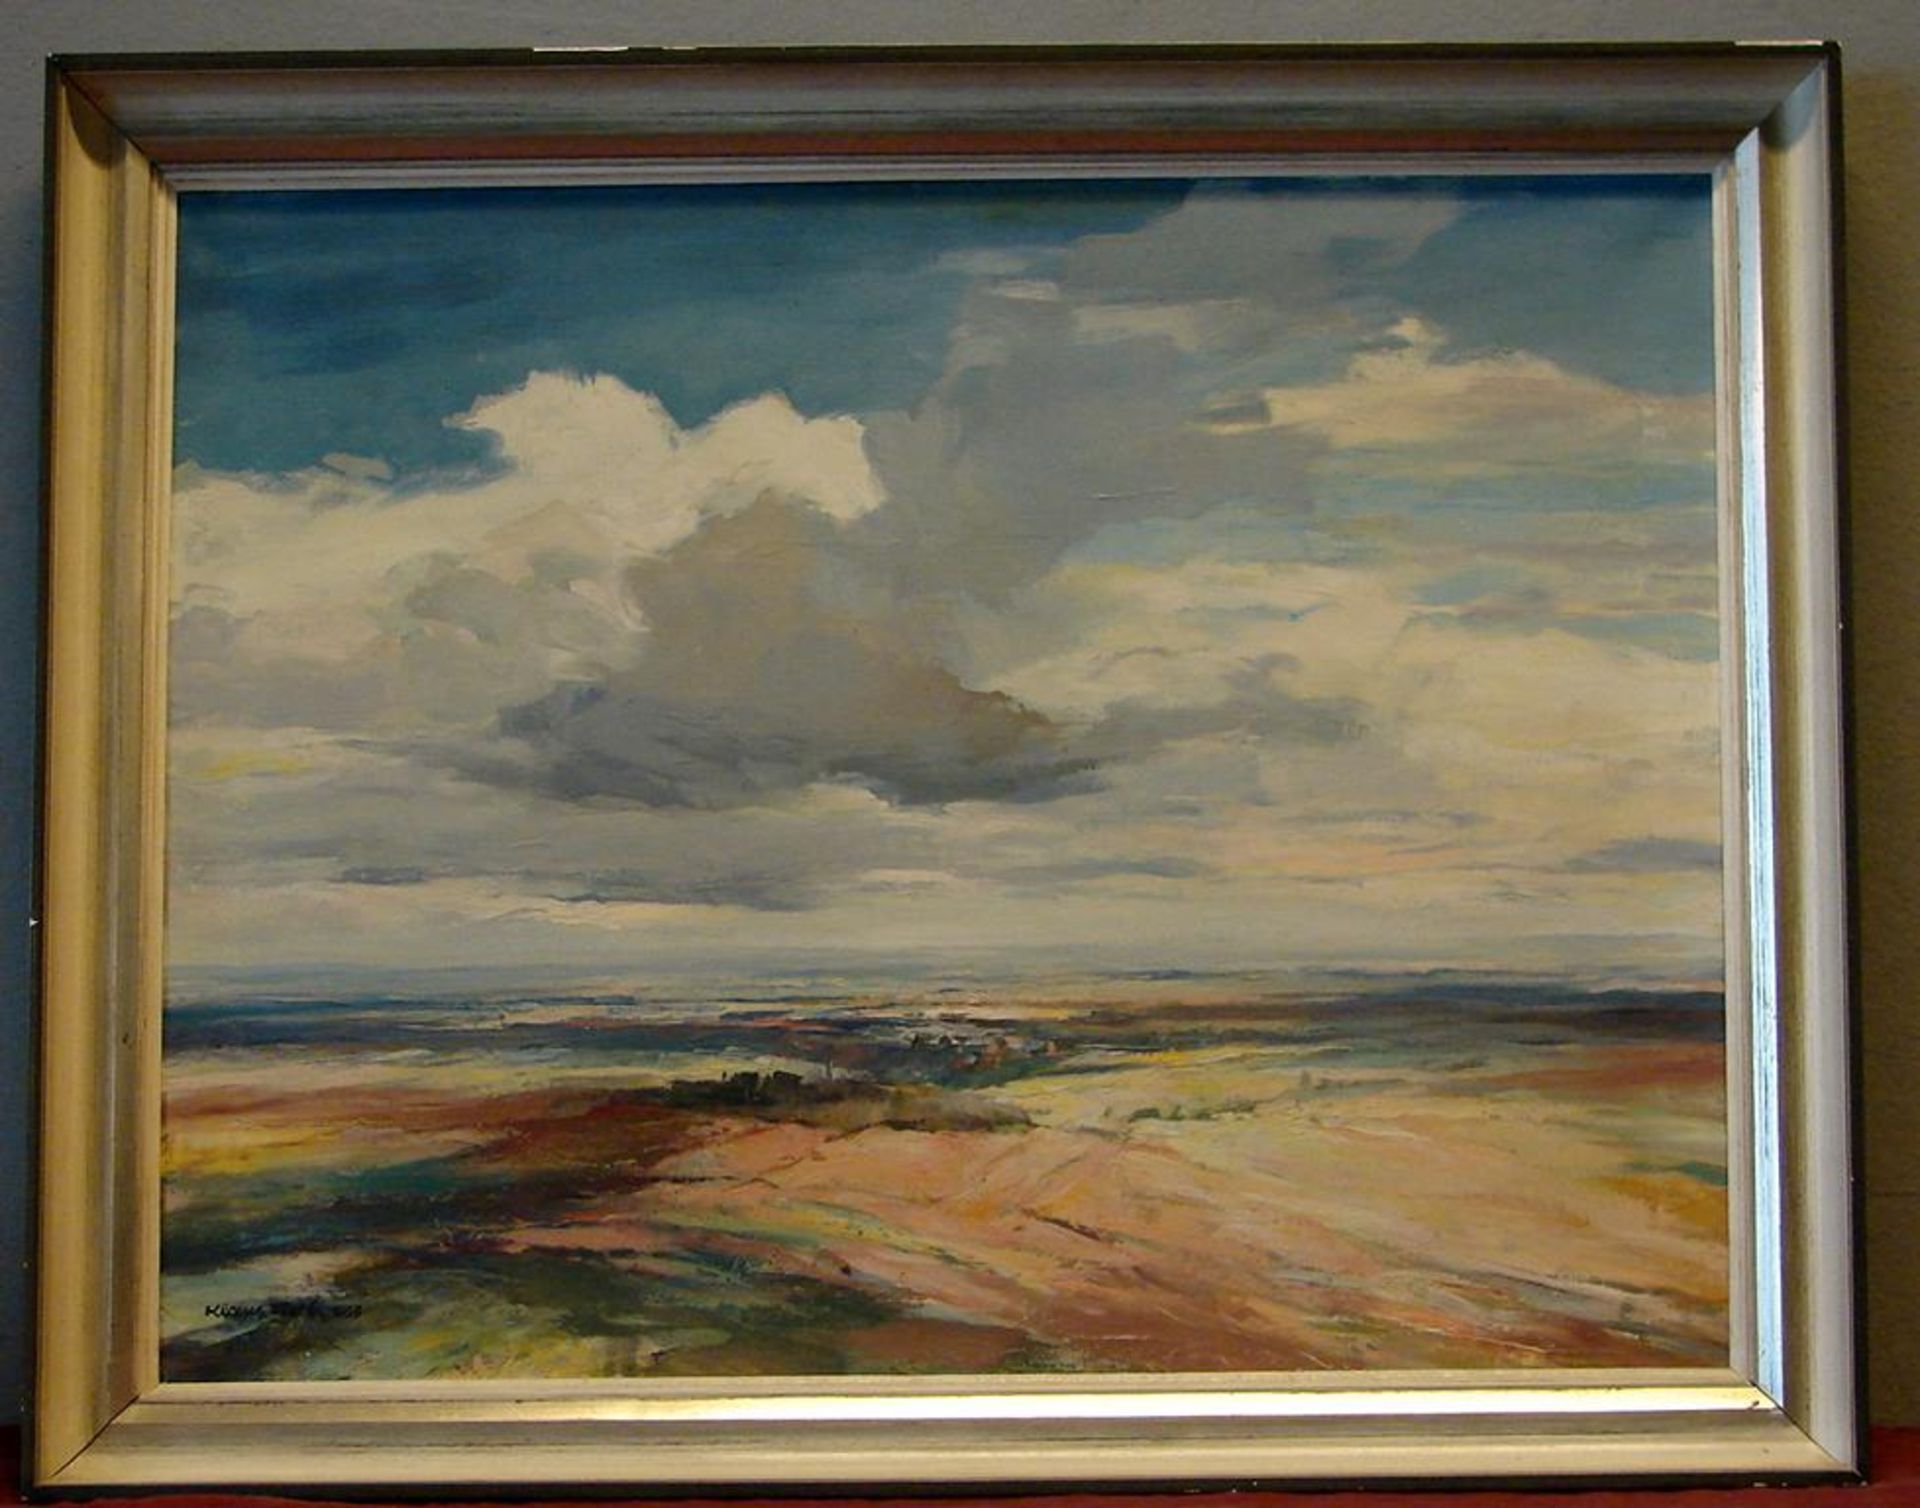 KLAUS FISCH, "Landschaft", ÖL/L, u.li.sig., dat. 1959, ca. 60 x 77 cm- - -22.00 % buyer's premium on